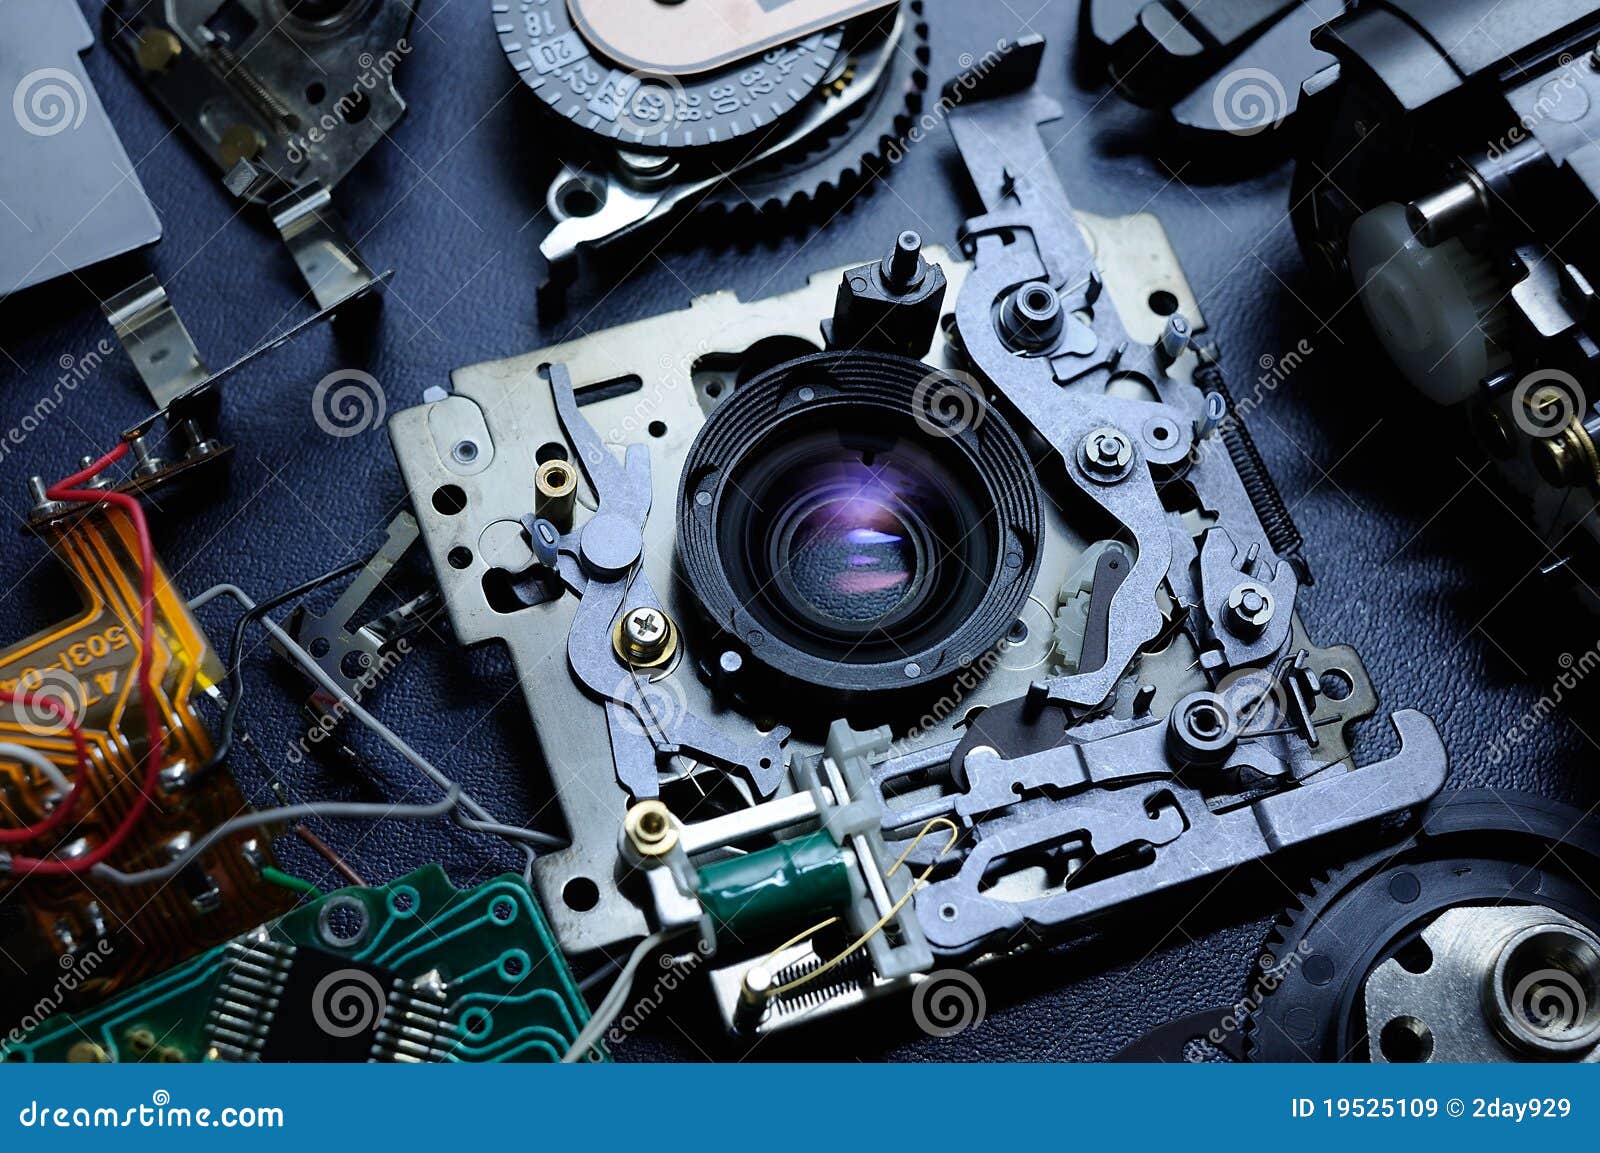 disassembled compact camera, flatlay